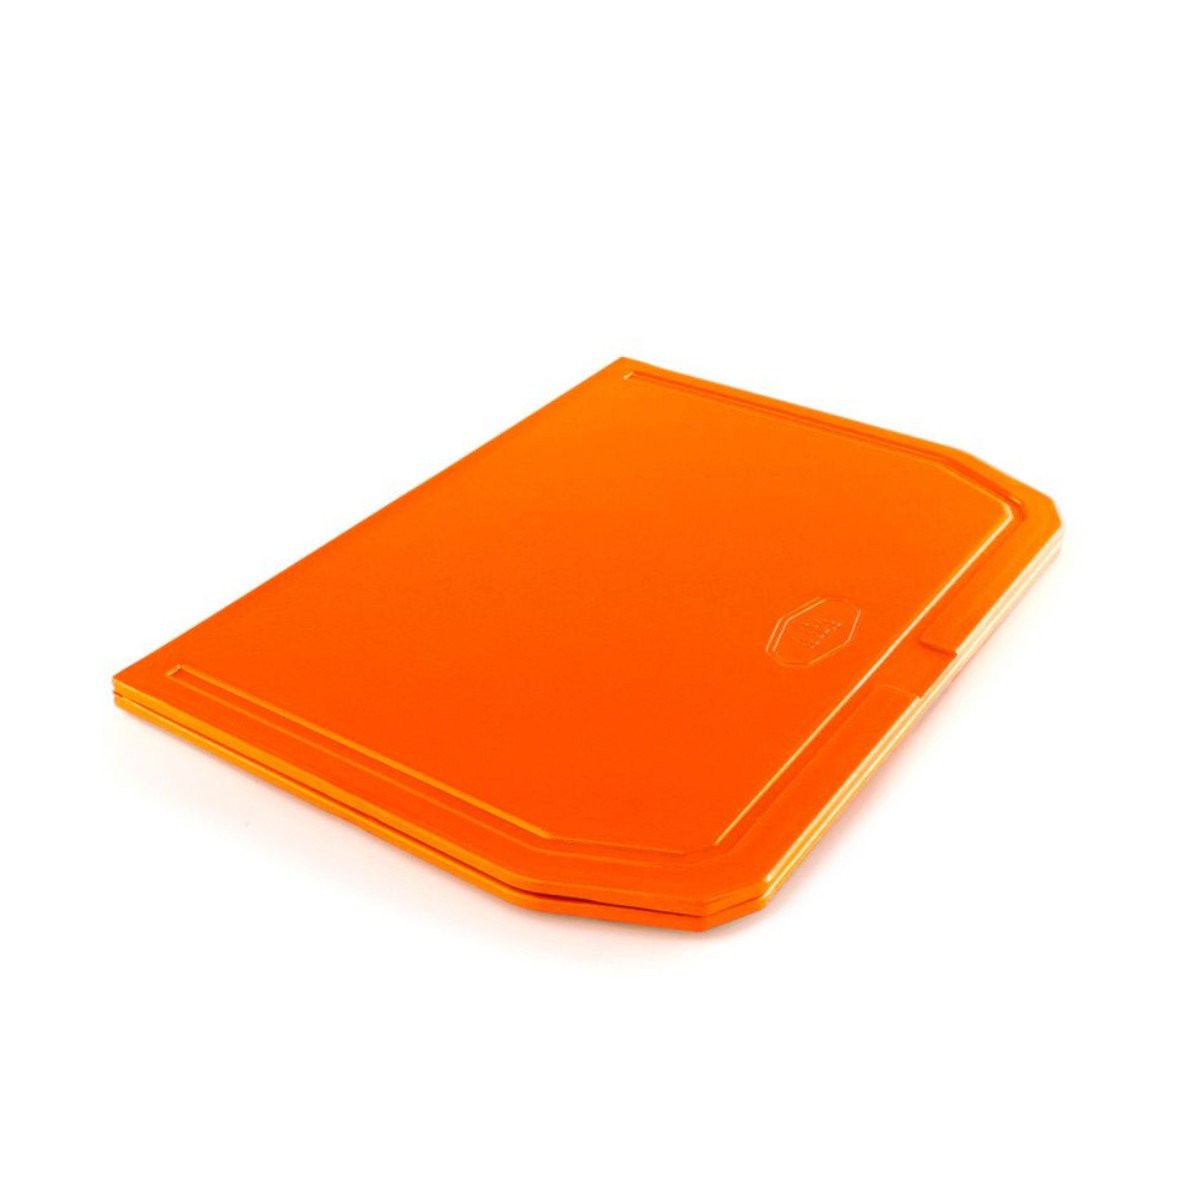 GSI Folding Cutting Board in Orange folded